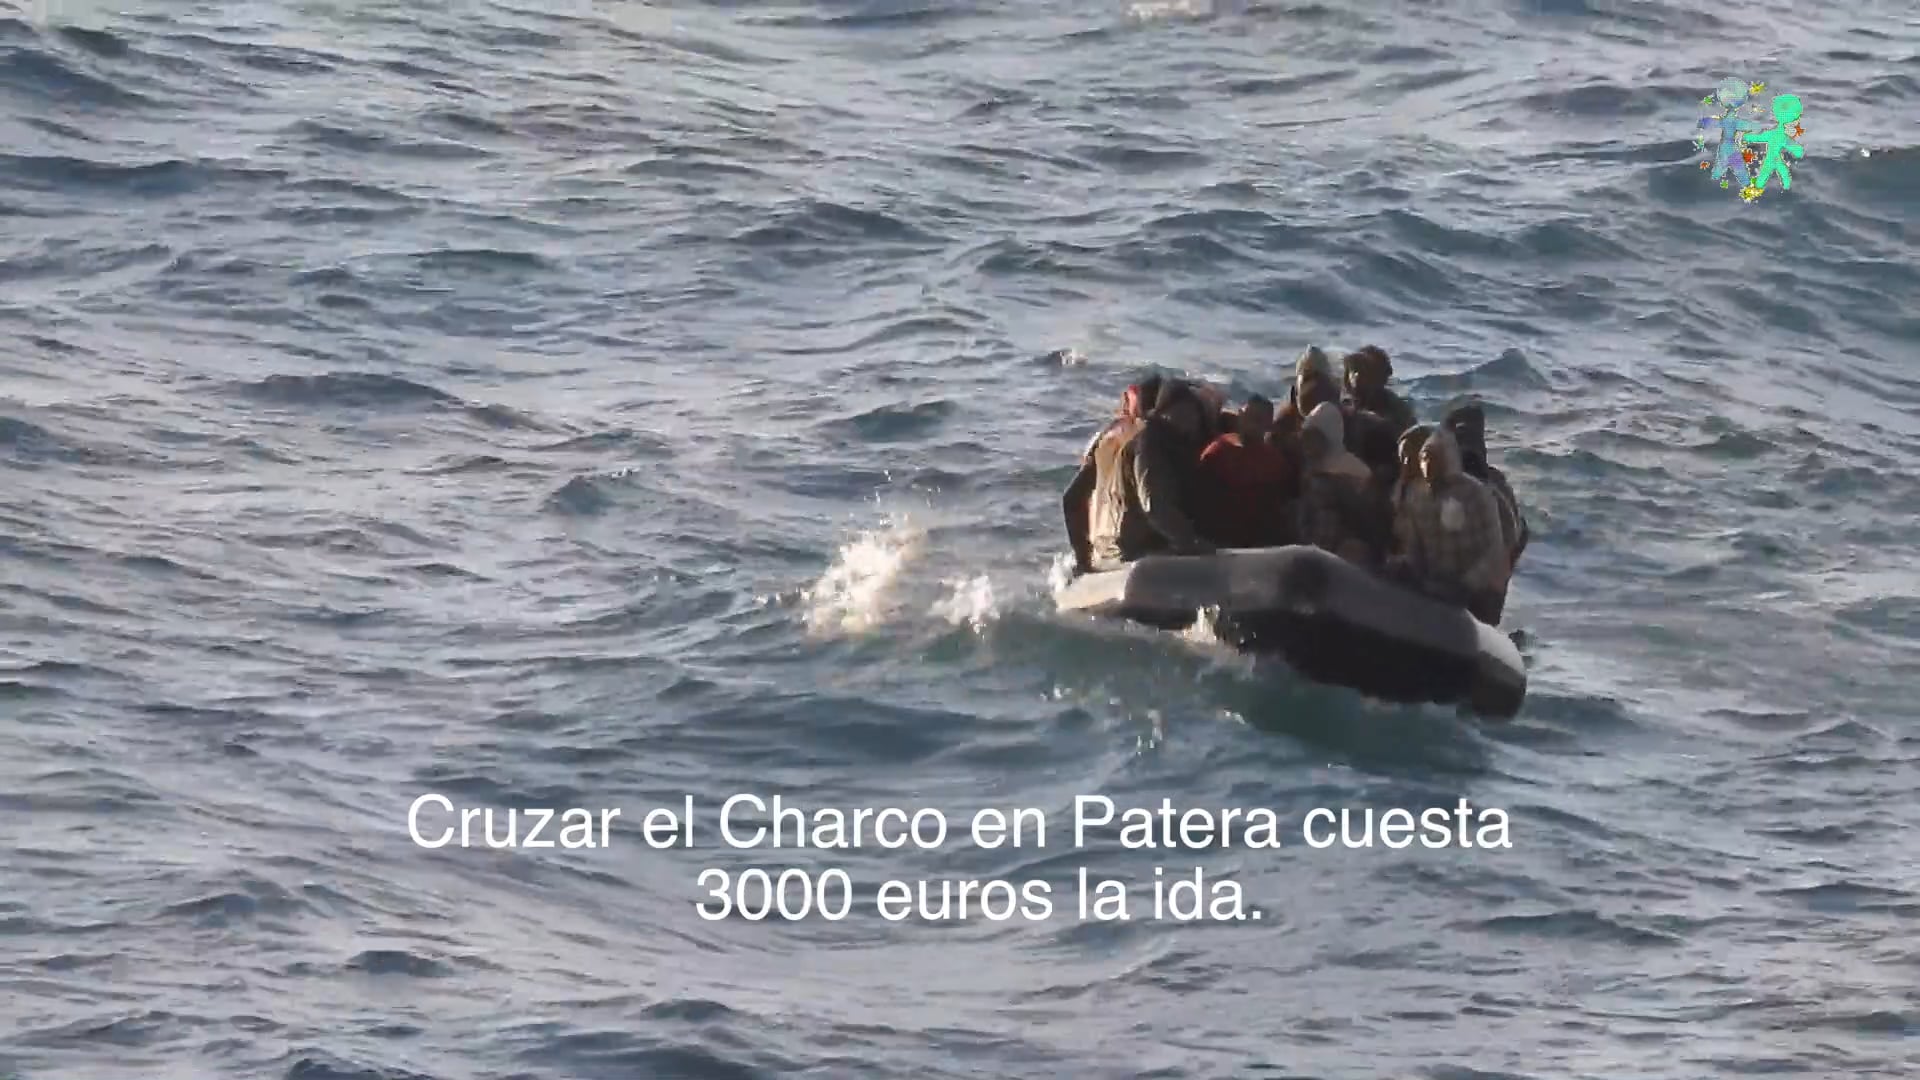 El dia 10 de Juny de 2018 van arribar a Melilla vuitanta migrants, 4 cadàvers, a través de diferents vaixells del SAR.
<br/>
<br/>És impressionant la quantitat de xavals que es llencen al mar per passar a Europa davant la falta d'un lloc de pas segur. El Govern Espanyol és responsable en gran mesura d'aquesta situació.<br/>